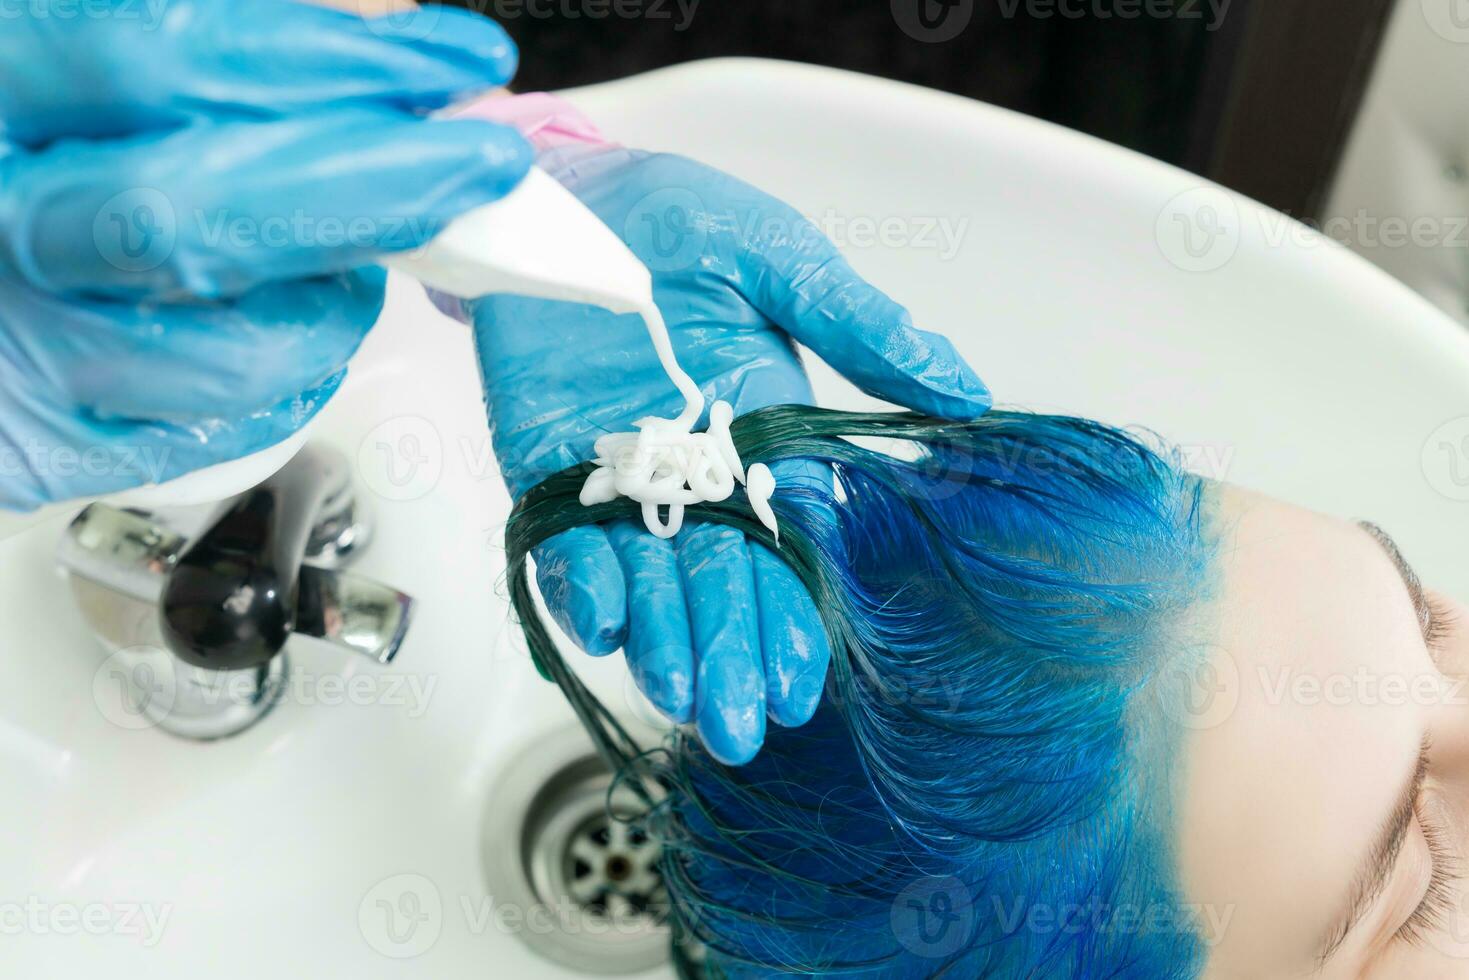 cabeleireiro aperta xampu a partir de tubo para do cliente azul cabelo enquanto lavando cabelo dentro Pia e chuveiro às beleza salão foto